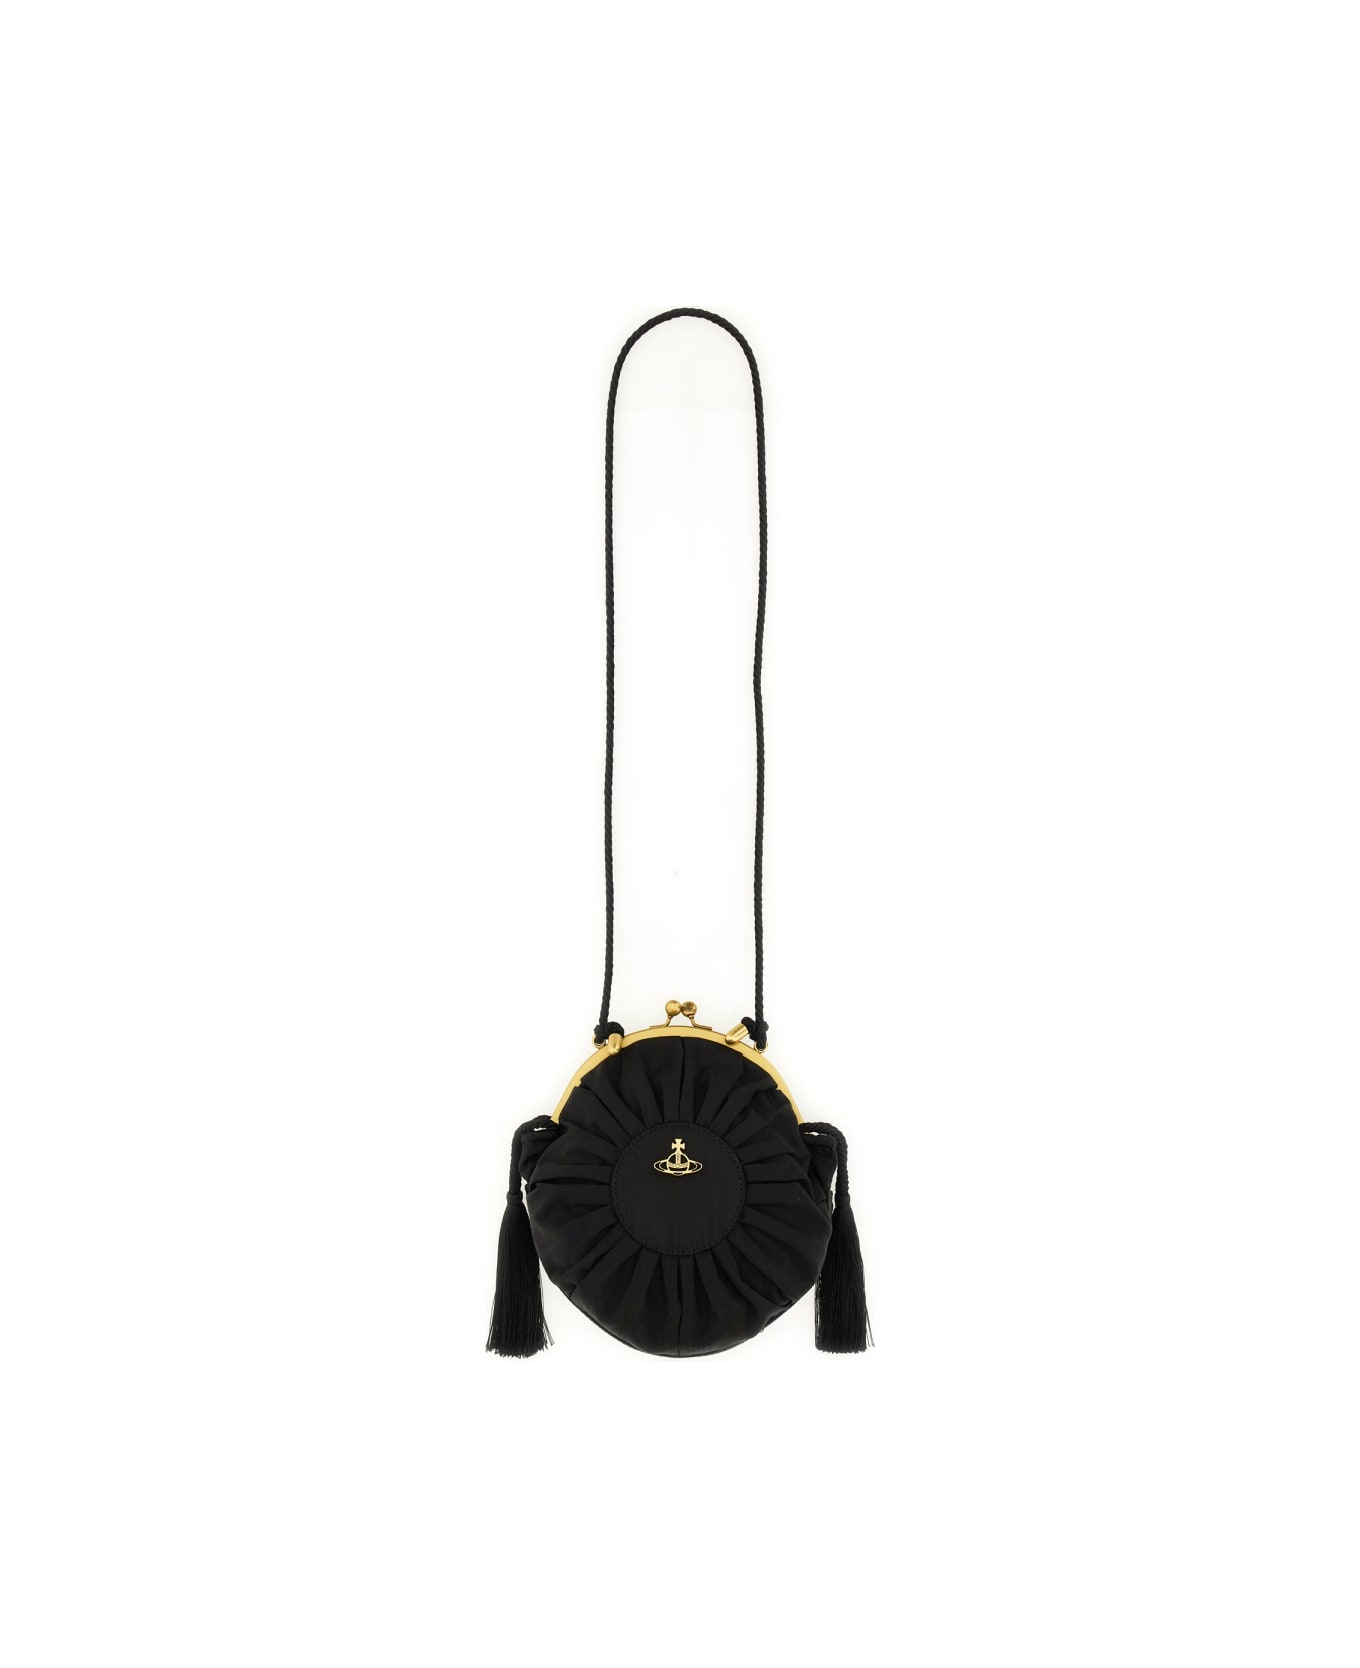 Vivienne Westwood Bag "rosie" - BLACK ショルダーバッグ